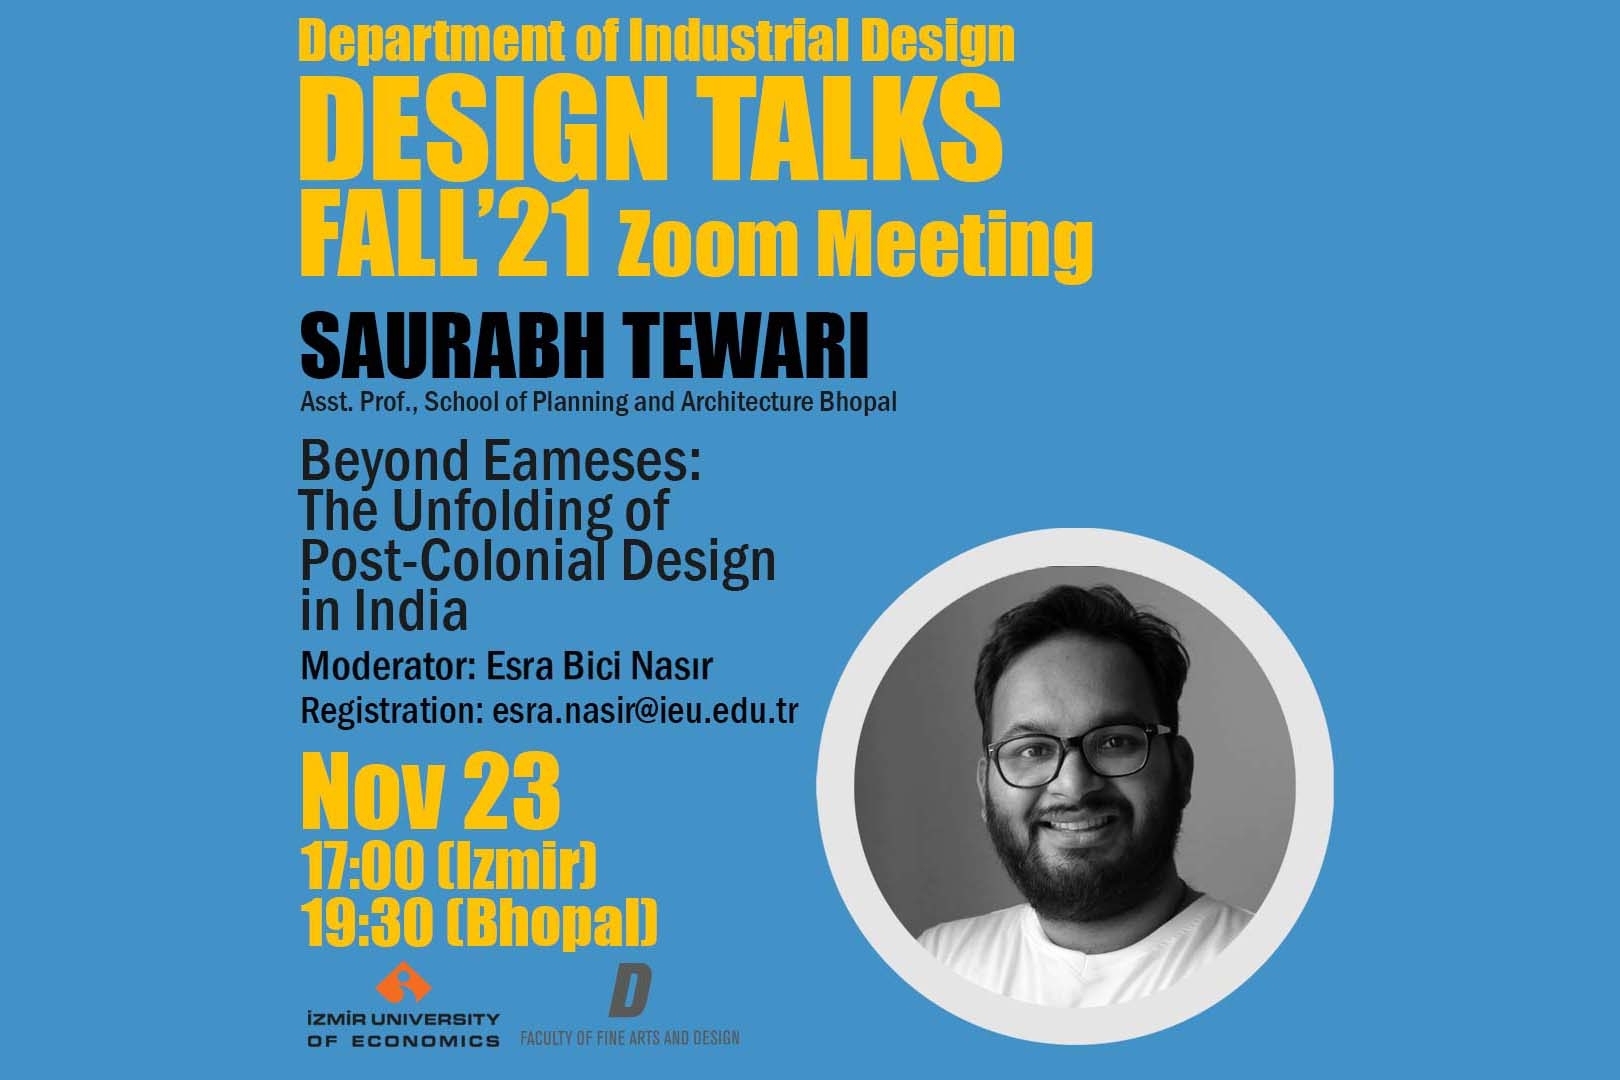 Tasarım Konuşmaları Güz '21, Dr. Saurabh Tewari ile devam ediyor 